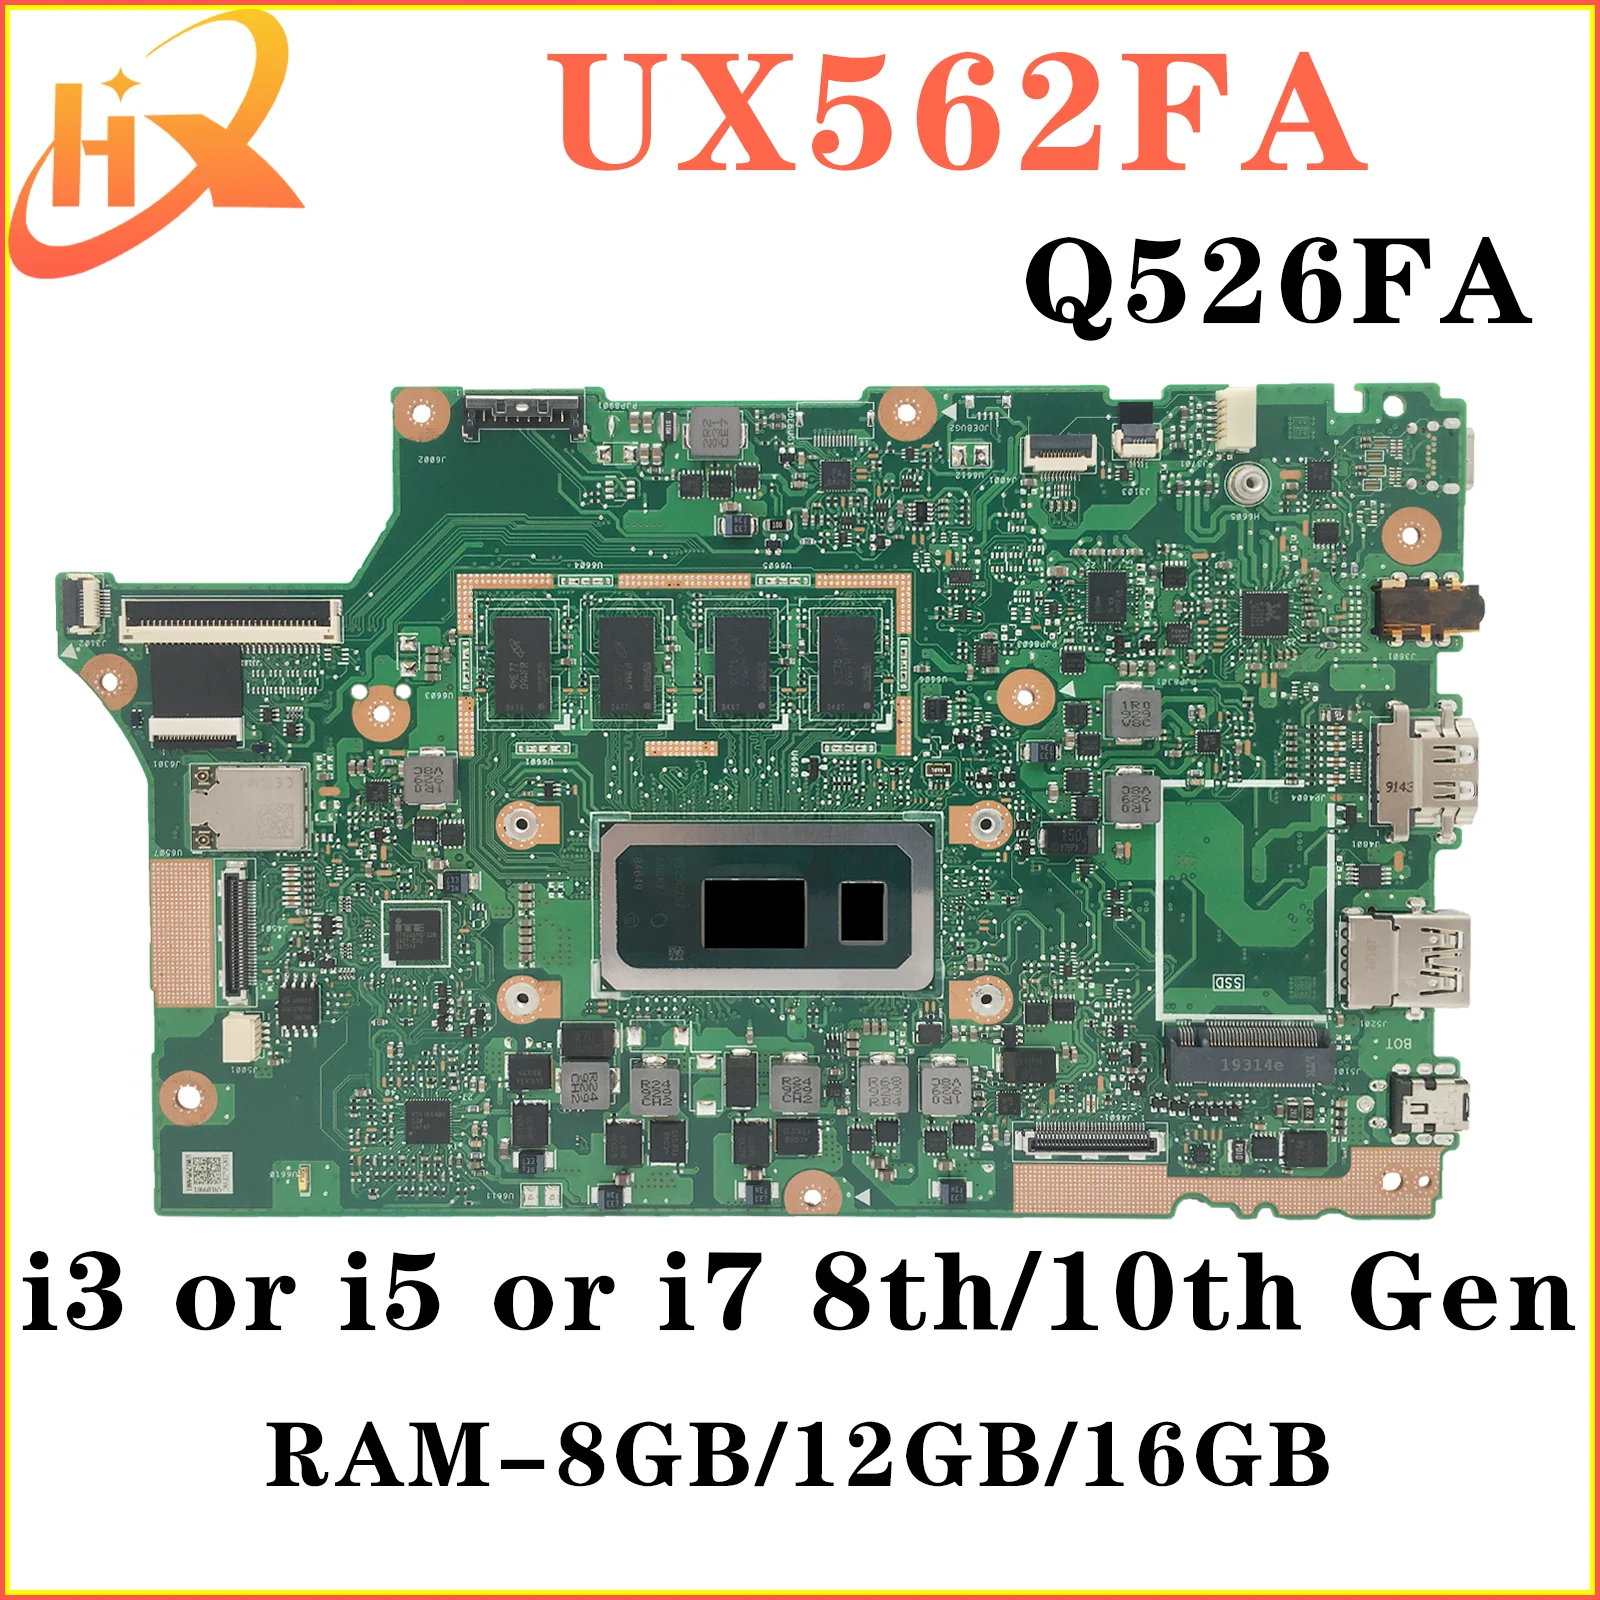 UX562FAC Материнская плата ASUS UX562FA UX562F Q526FA Q526FAC Q526F материнская плата для ноутбука i5 i7 8/10-го поколения RAM-8GB/12GB/16GB kefu материнская плата asus zenbook flip 13 ux363 ux363ja bx363ja rx363ja материнская плата для ноутбука i5 i7 10 го поколения 8 гб озу